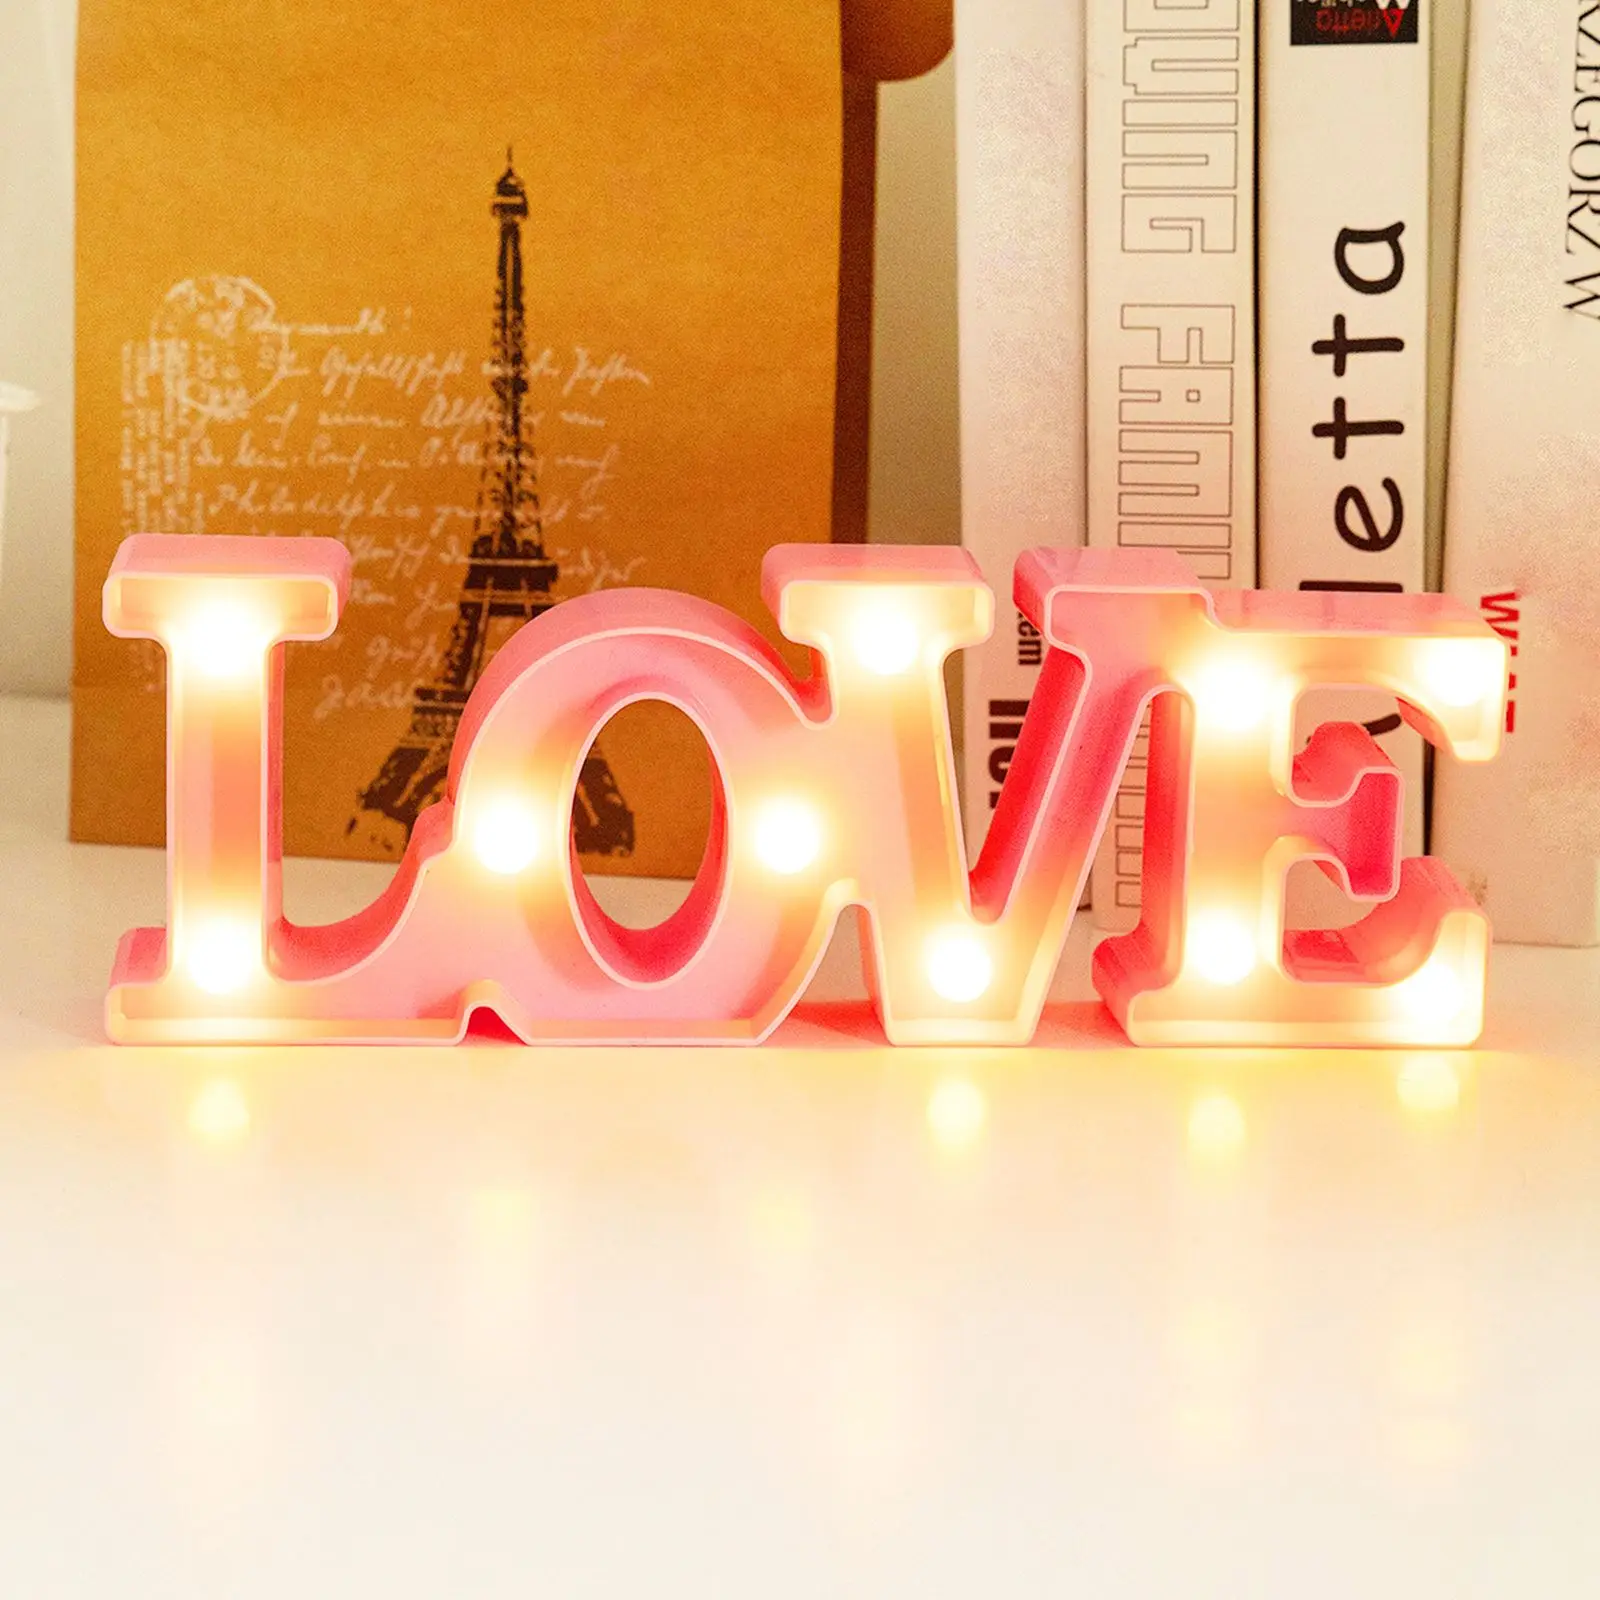 

Светодиодный ночсветильник LOVE Heart, украшение для дня рождения, свадьбы, на батарейках, прикроватная лампа для спальни, гостиной